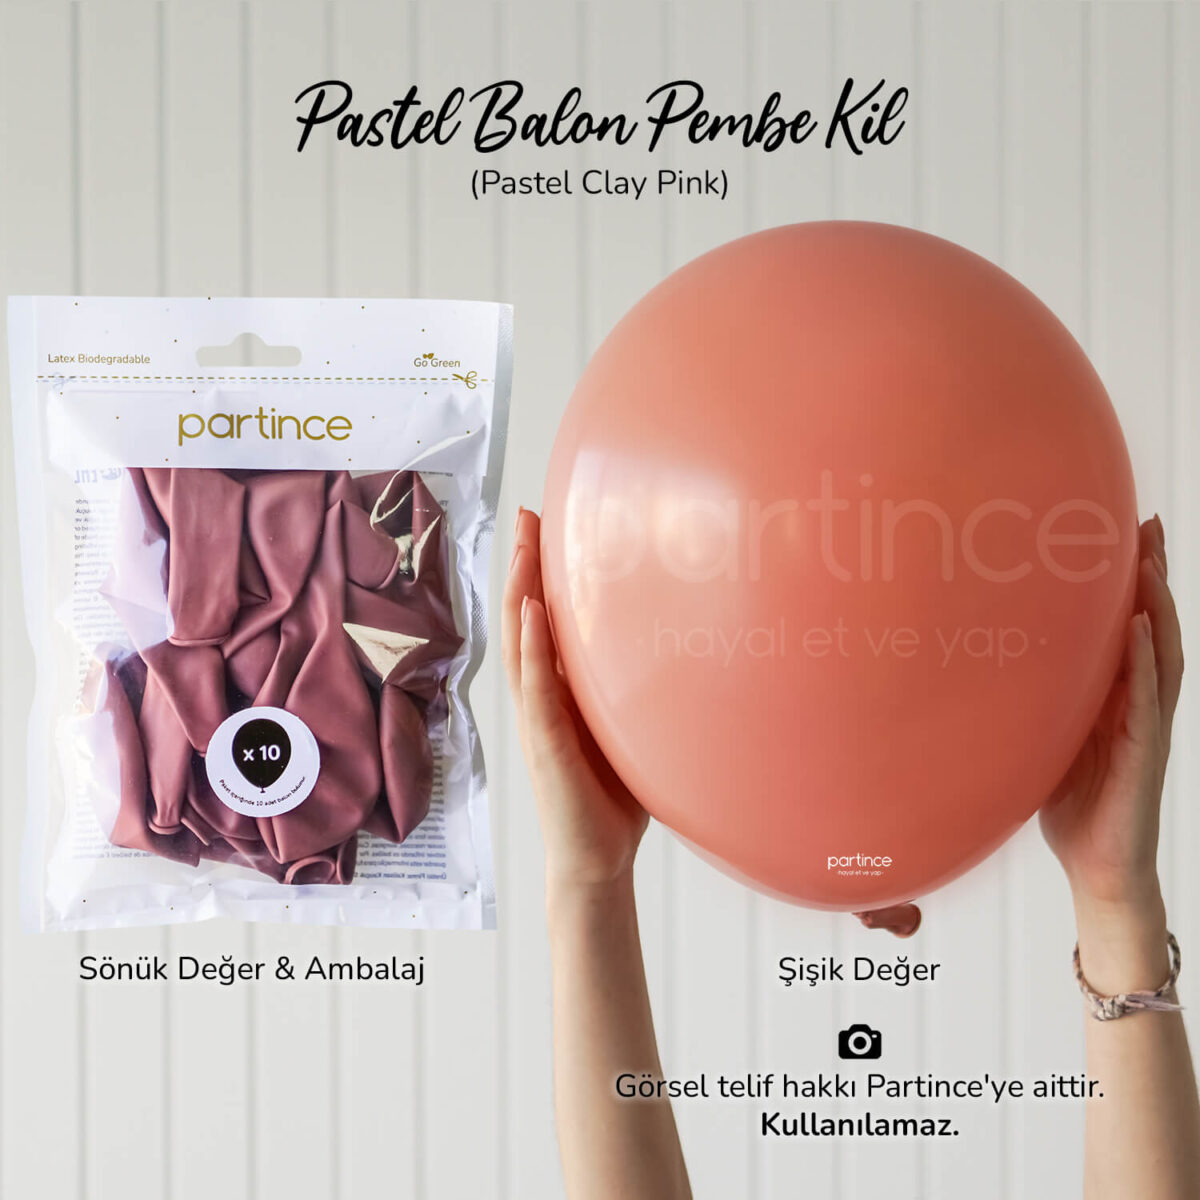 Pastel balon clay pink (pembe kil)